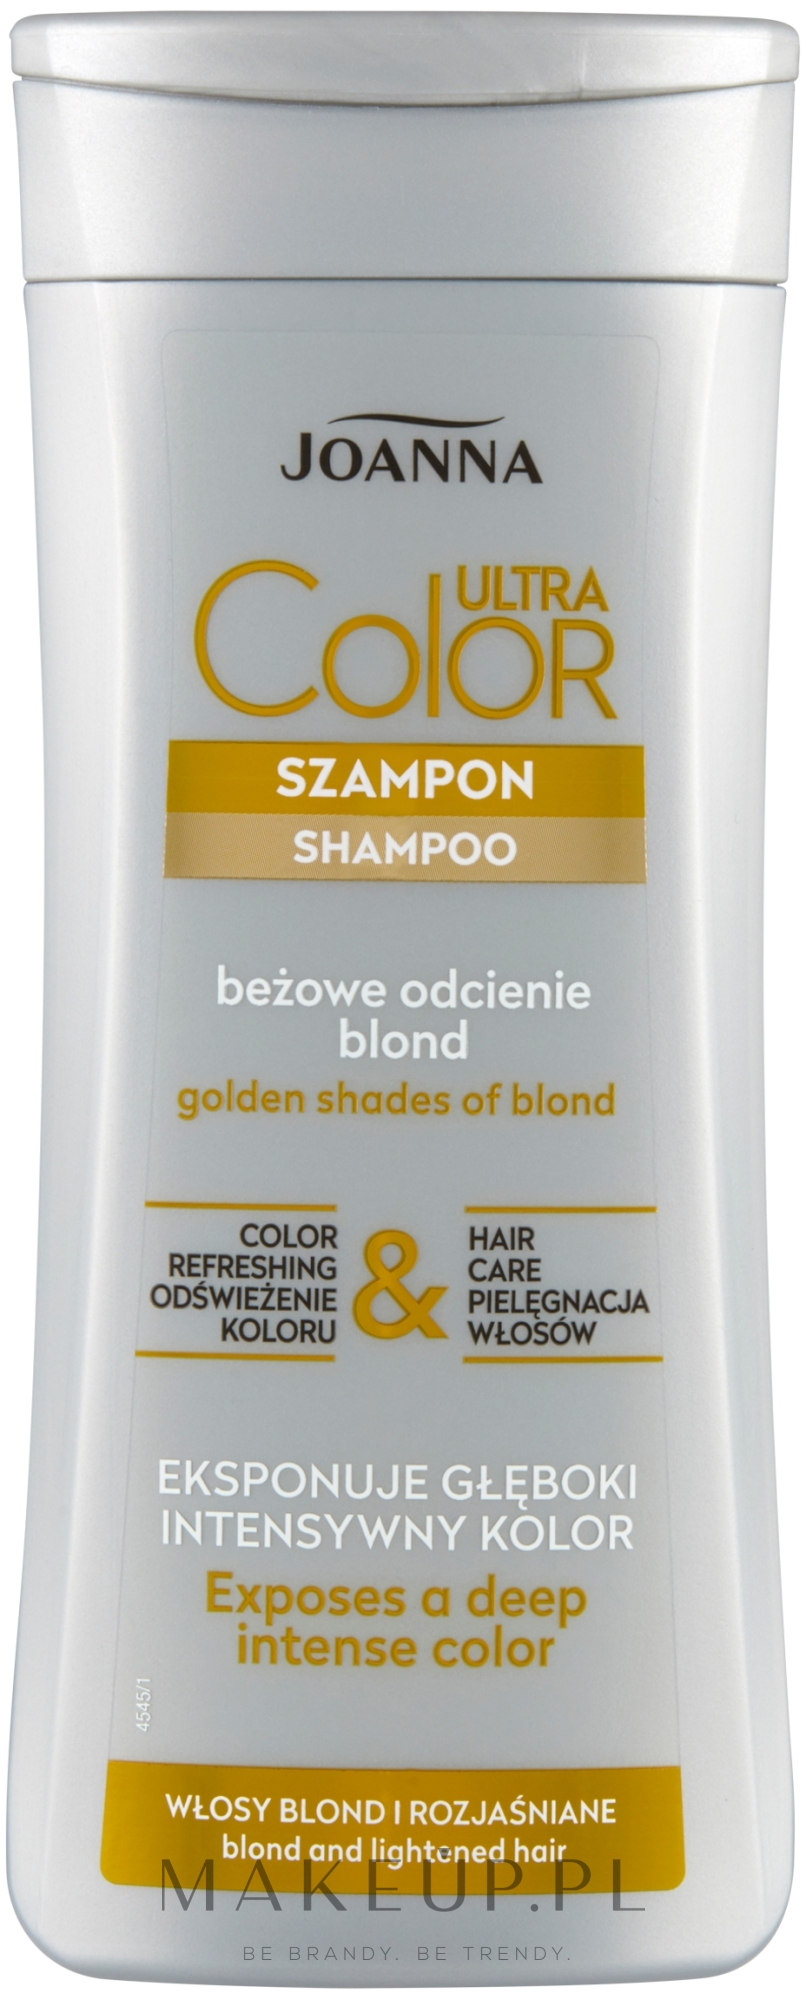 szampon przeciw żółtym włosom joanna